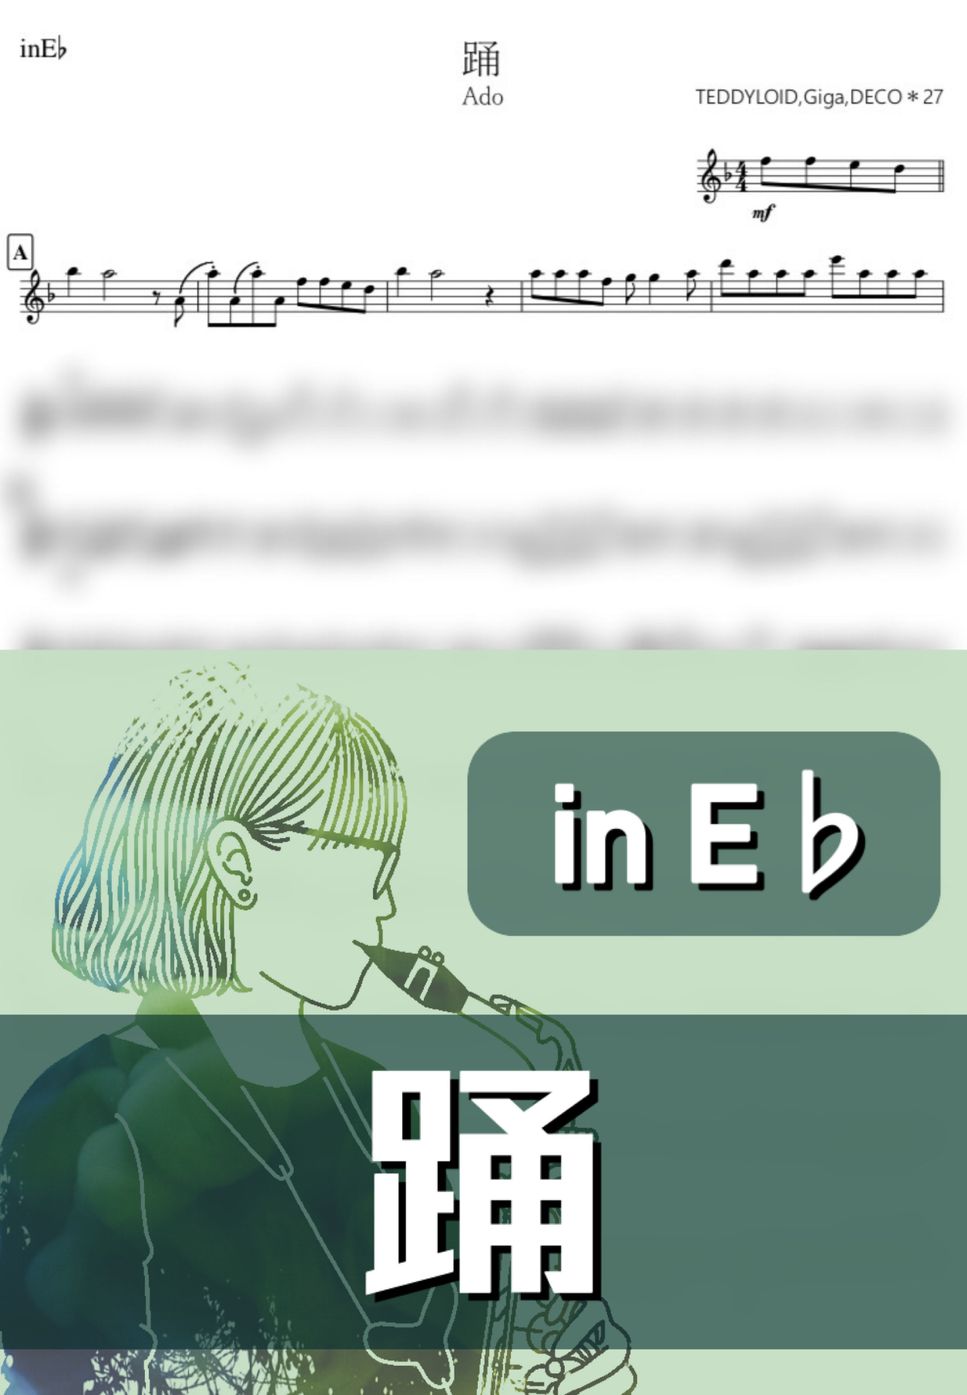 Ado - 踊 (E♭) by kanamusic